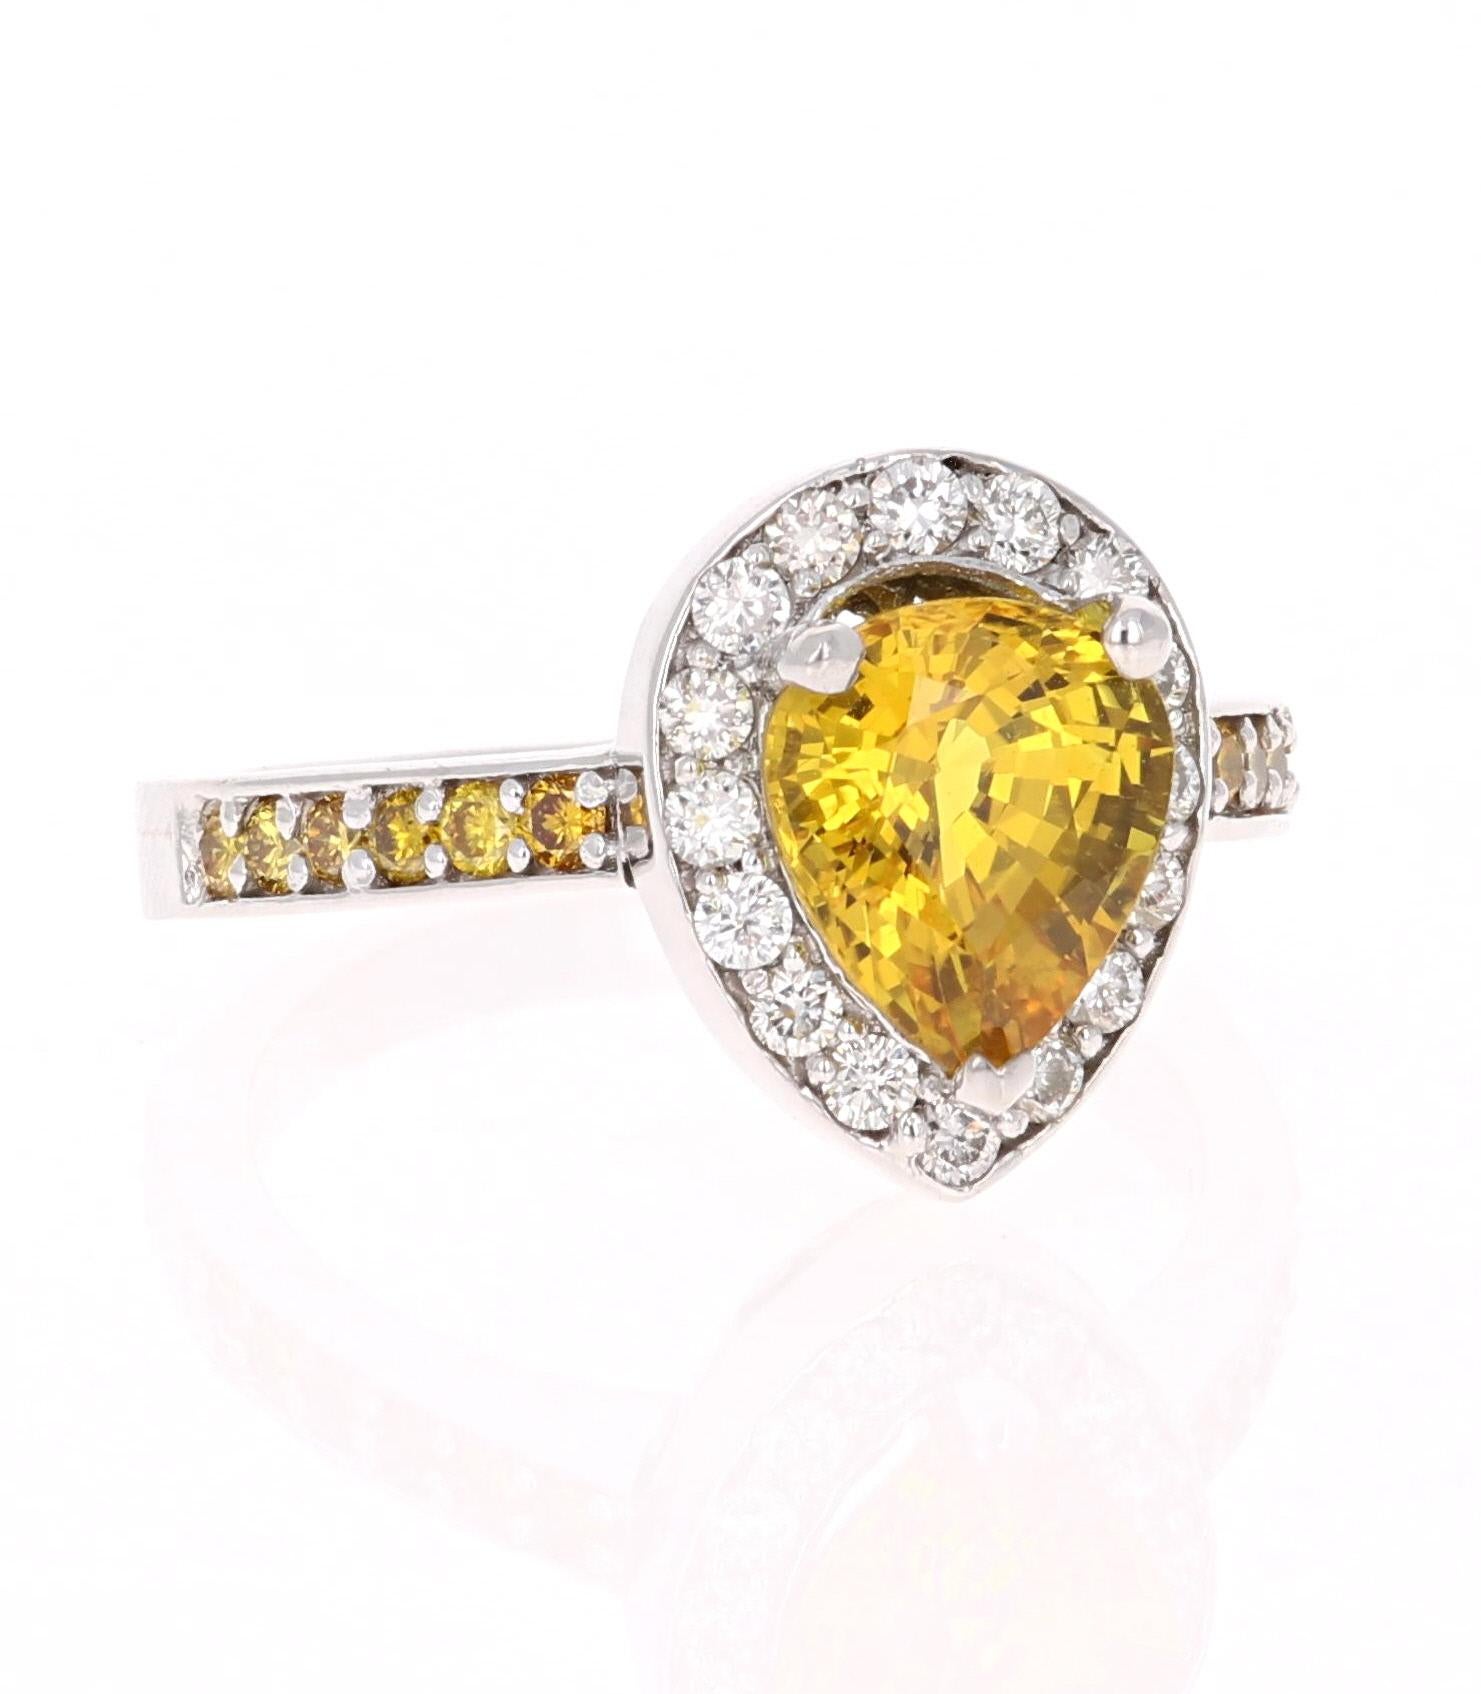 Ein einzigartiger Ring mit gelbem Saphir, gelben und weißen Diamanten, der ein schöner Verlobungsring sein kann. 
Der gelbe Saphir im Birnenschliff hat 2,66 Karat. 
Es hat einen Halo aus 16 weißen Diamanten im Rundschliff mit einem Gewicht von 0,37